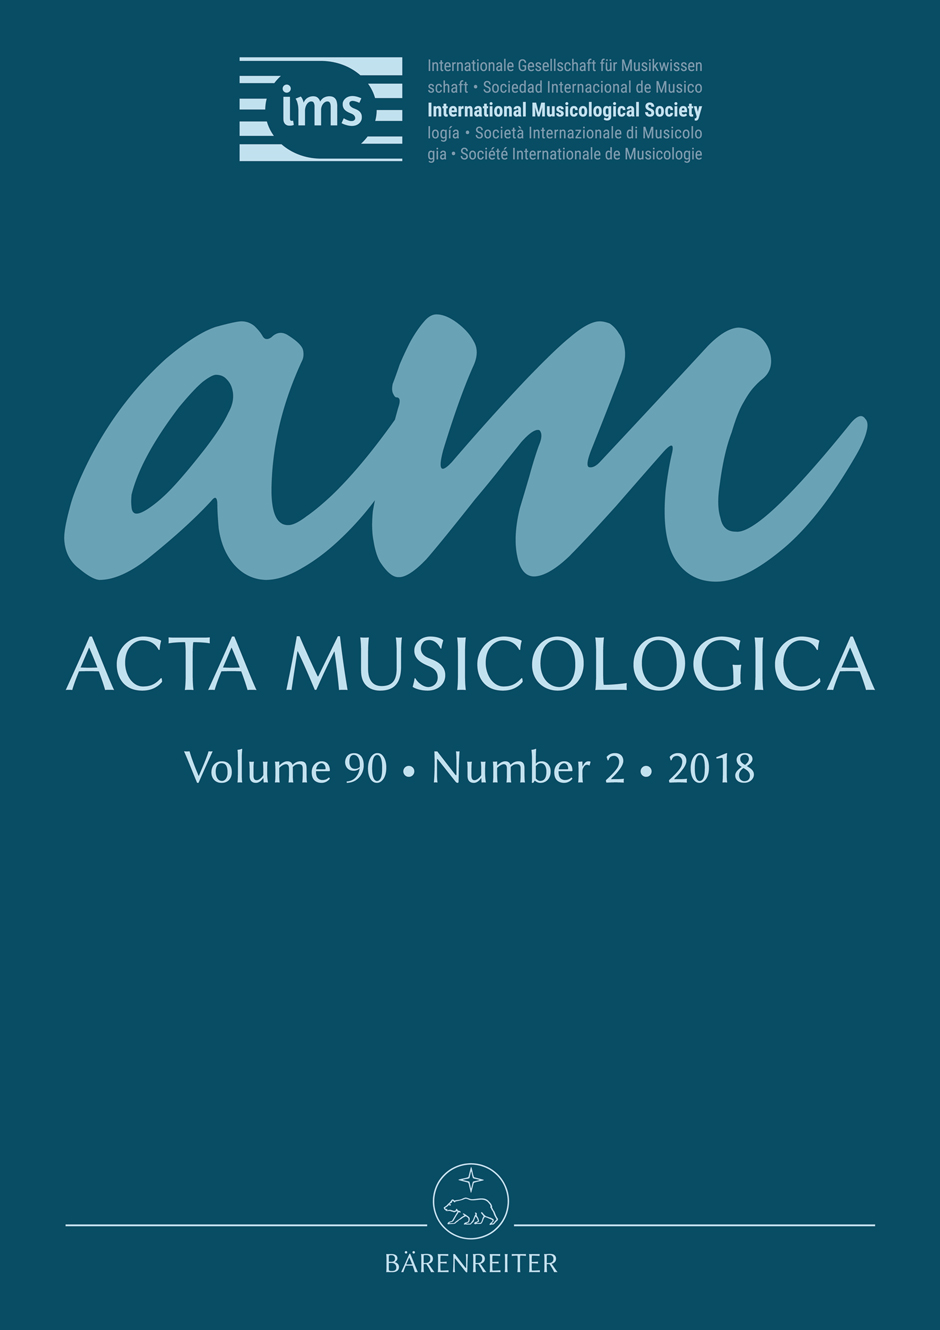 Current issue of Acta Musicologica